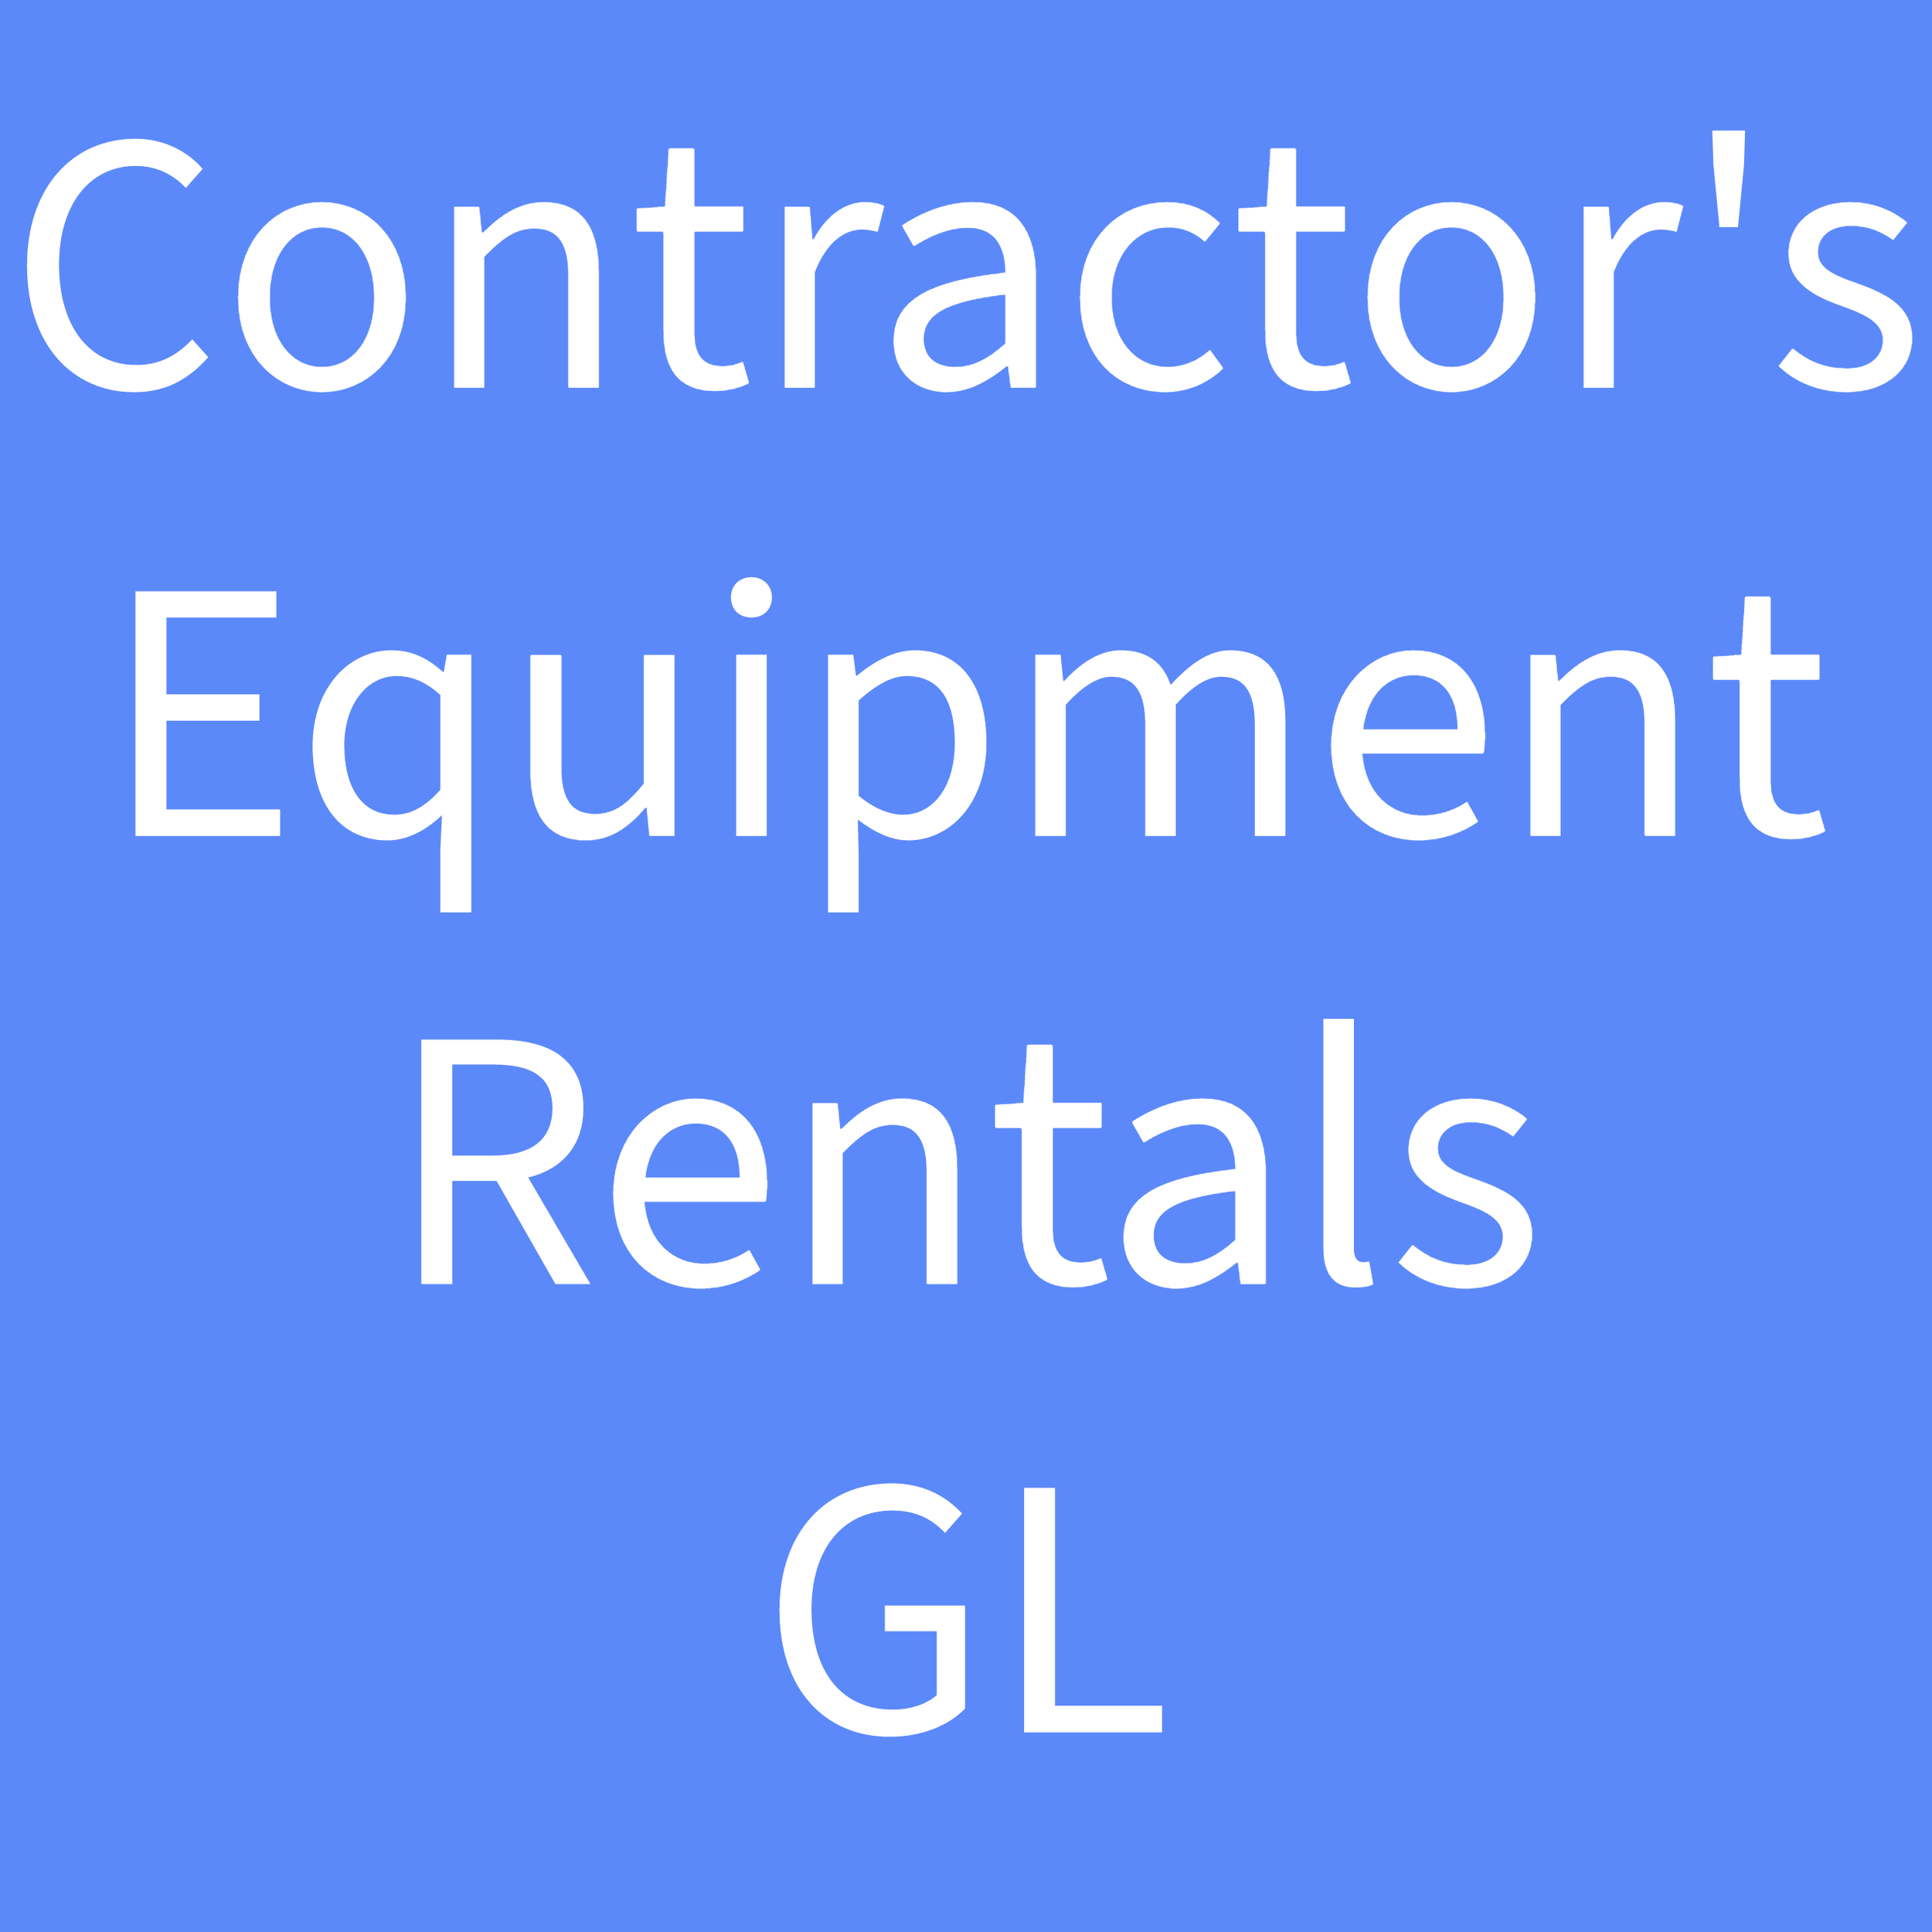 Contractor's Equipment Rentals